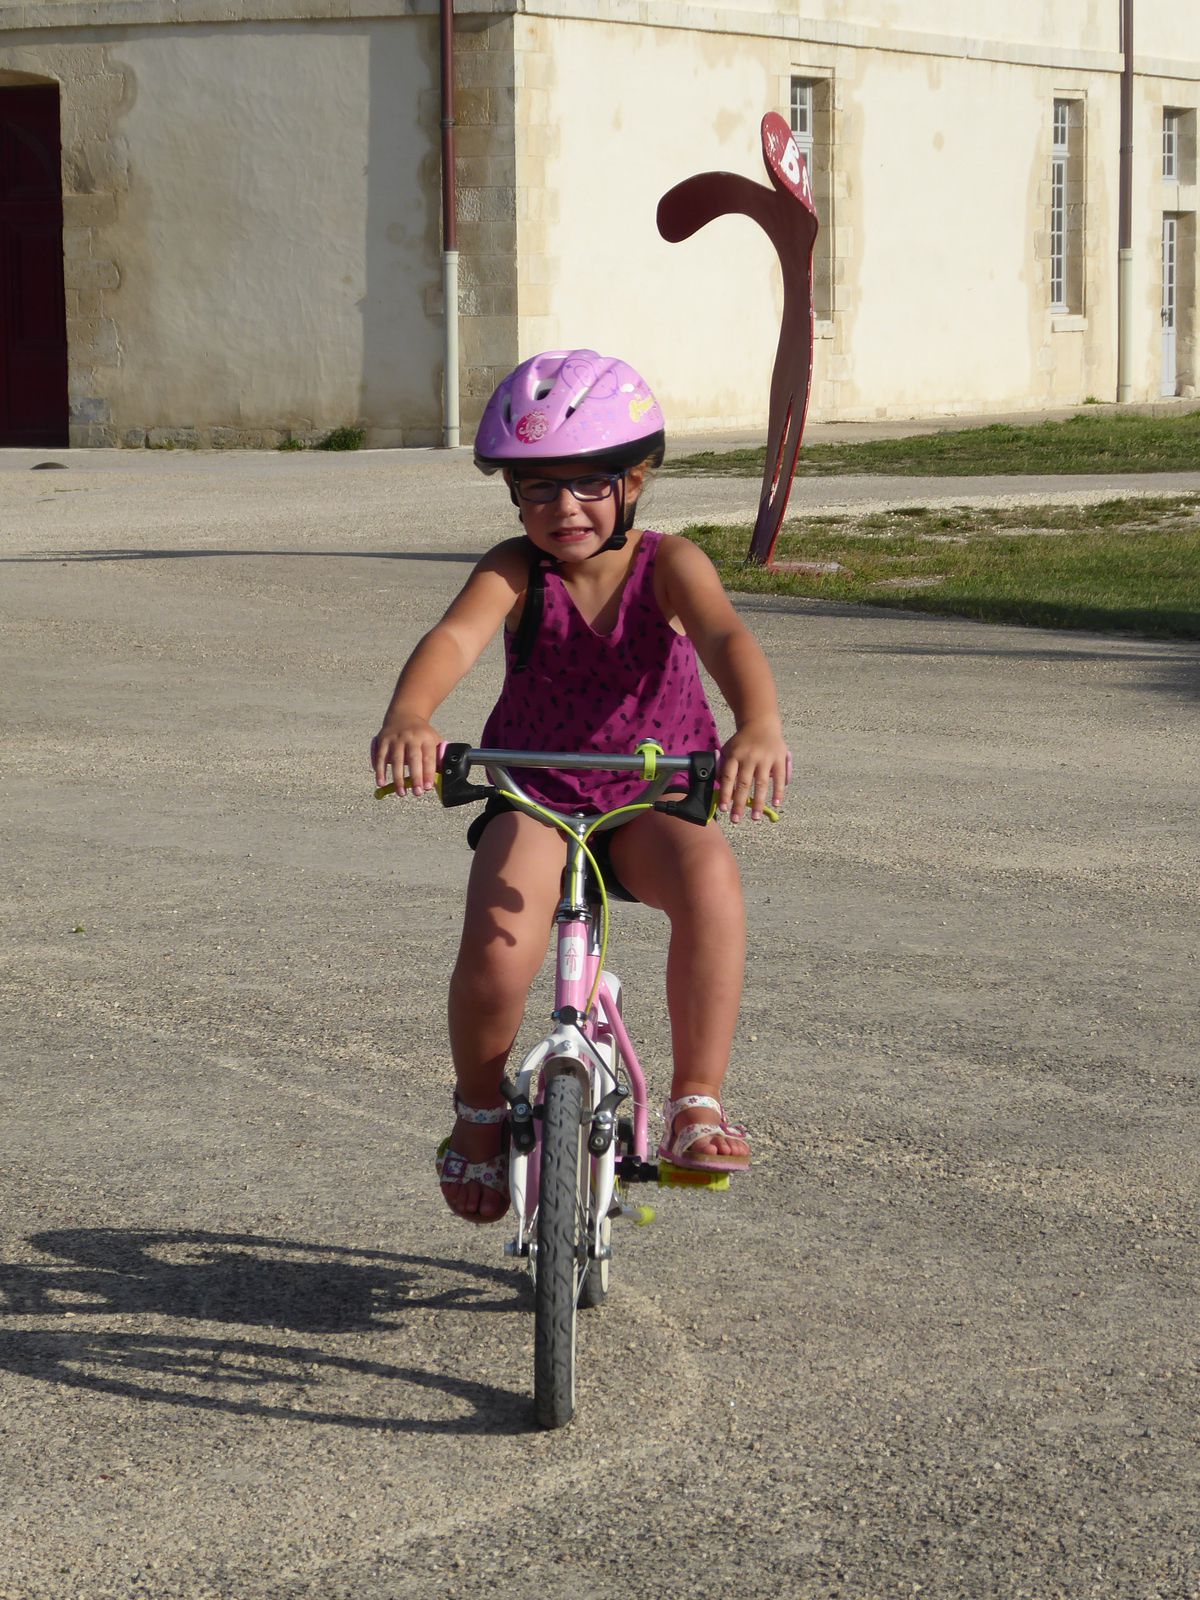 Les vacances sur l'ile d'Oléron: les promenades en vélo